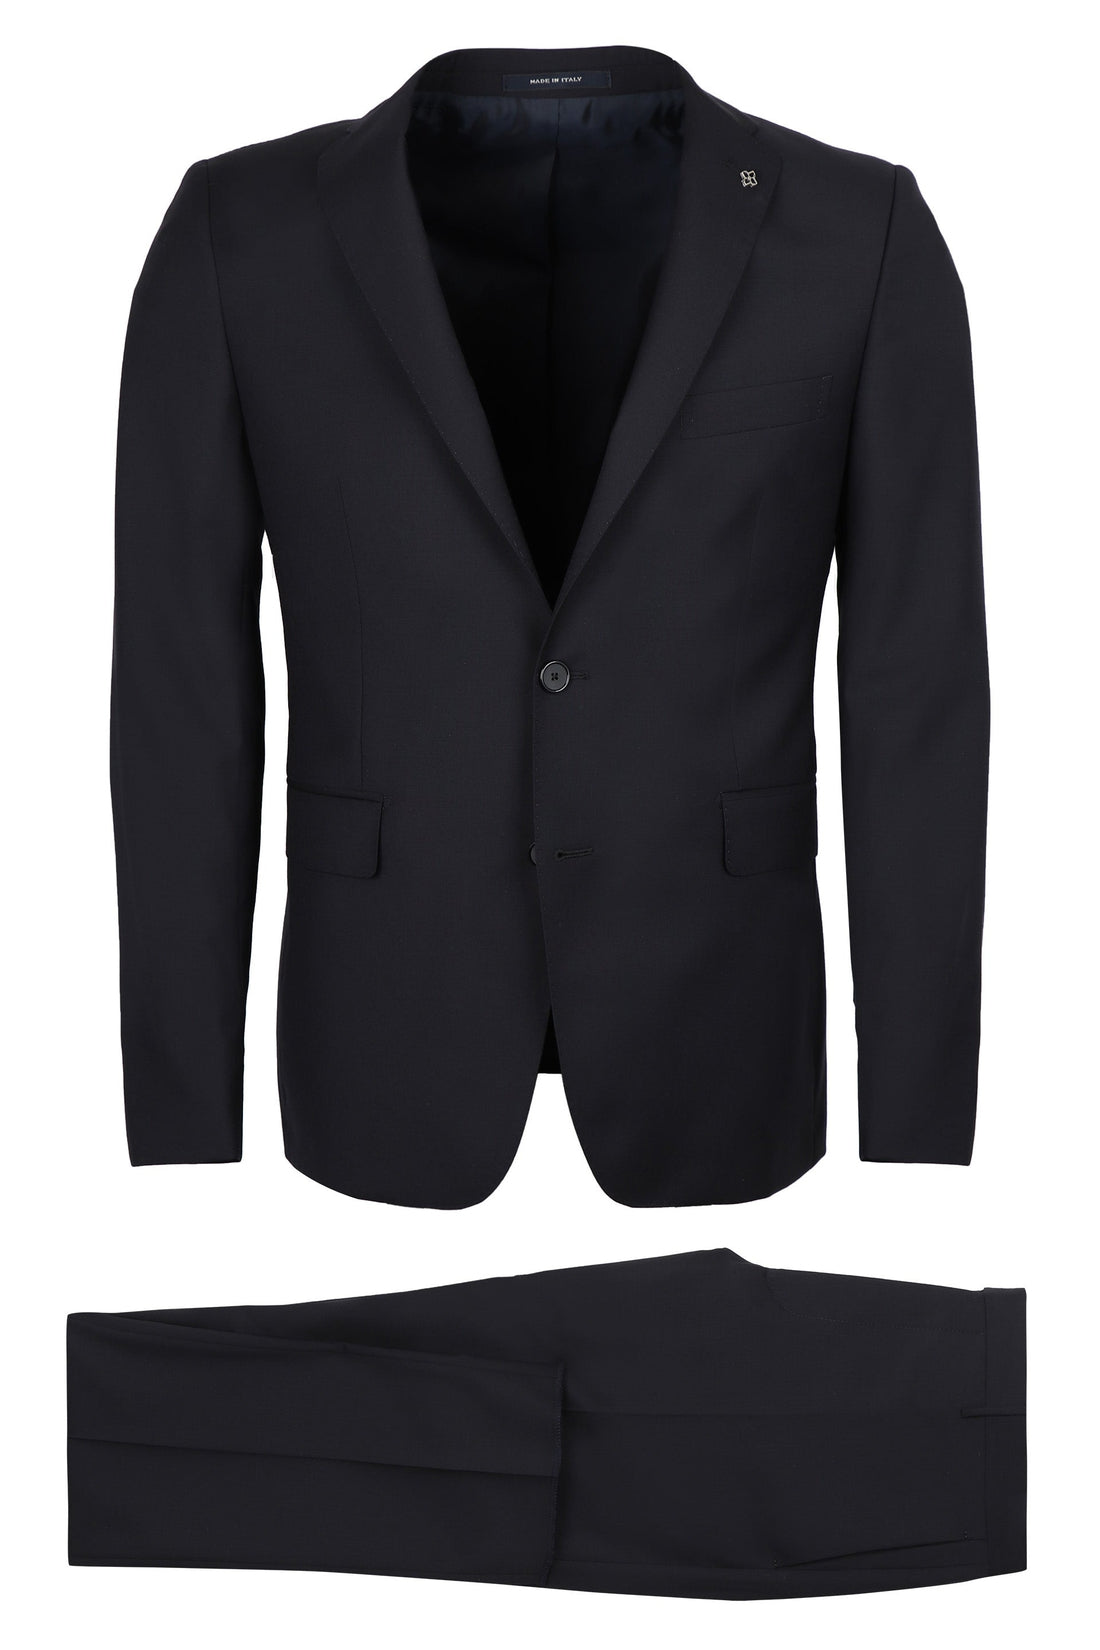 Tagliatore-OUTLET-SALE-Virgin wool two piece suit-ARCHIVIST